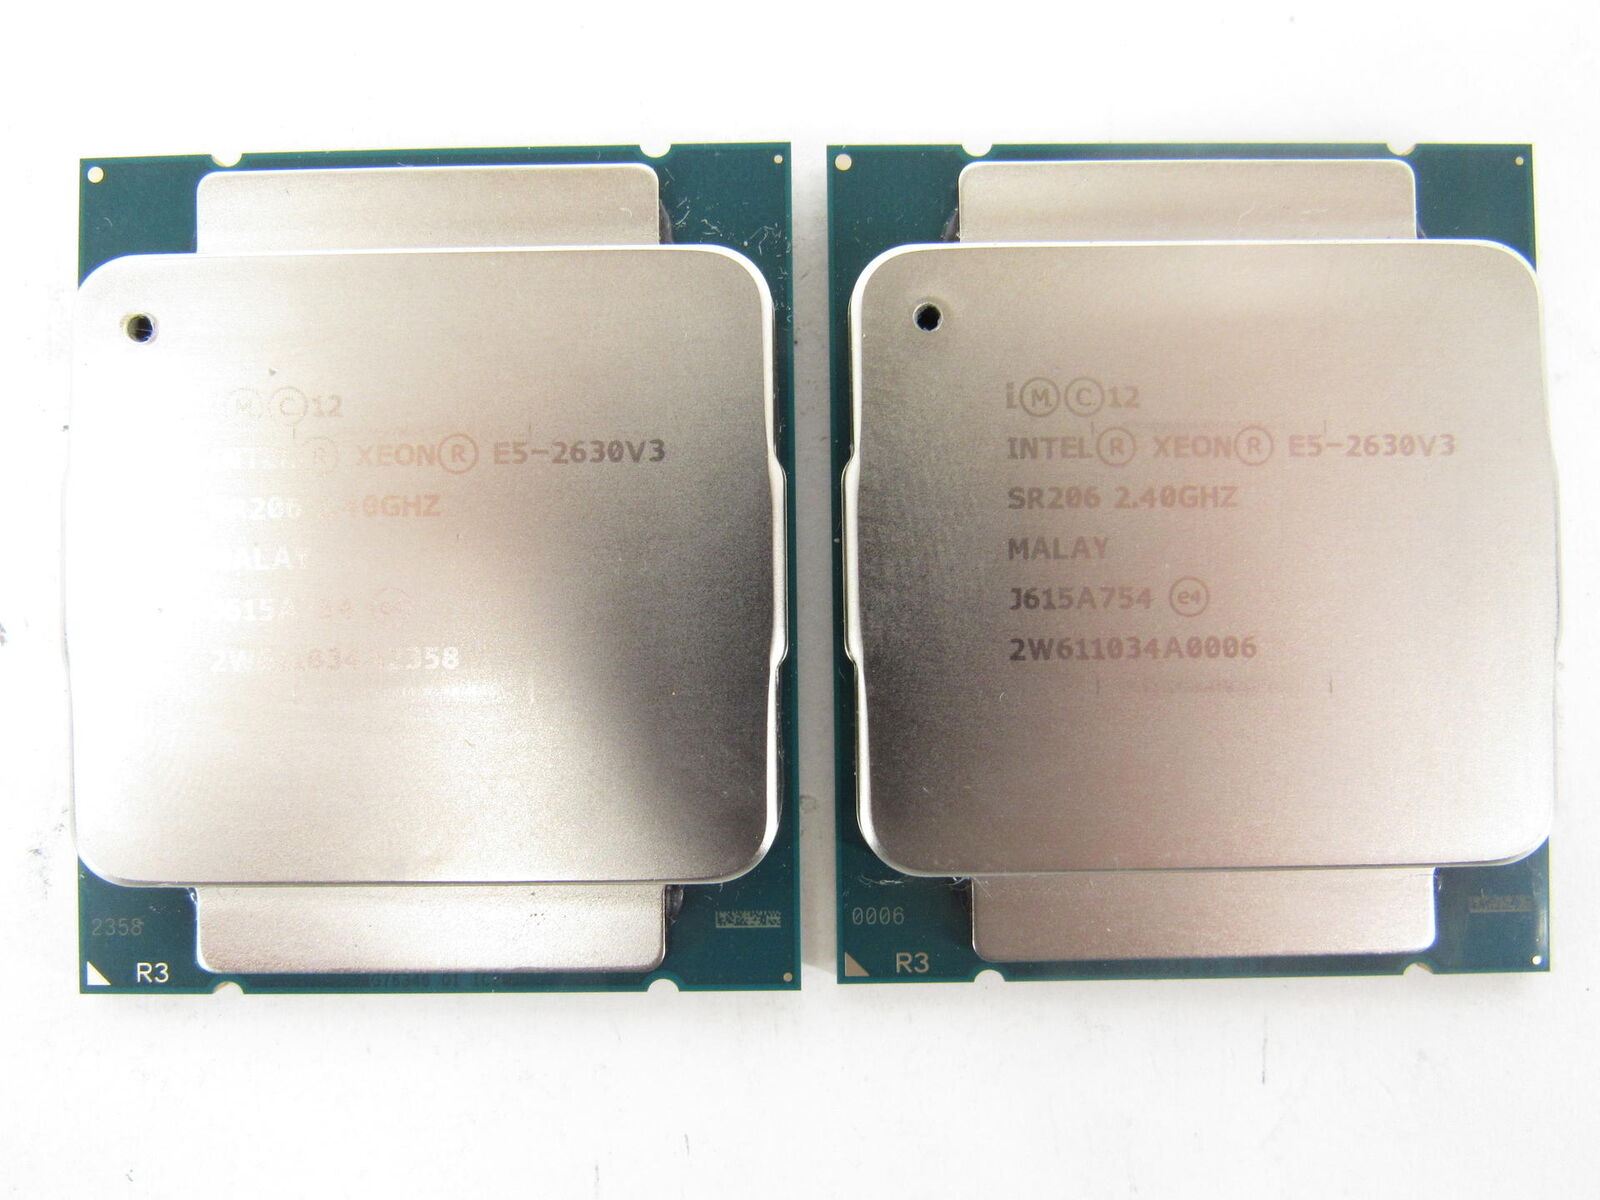 2x Intel E5-2630v3 Xeon 2.4GHz 8C 20MB LGA2011-3 Processor Matching Pair Lot 